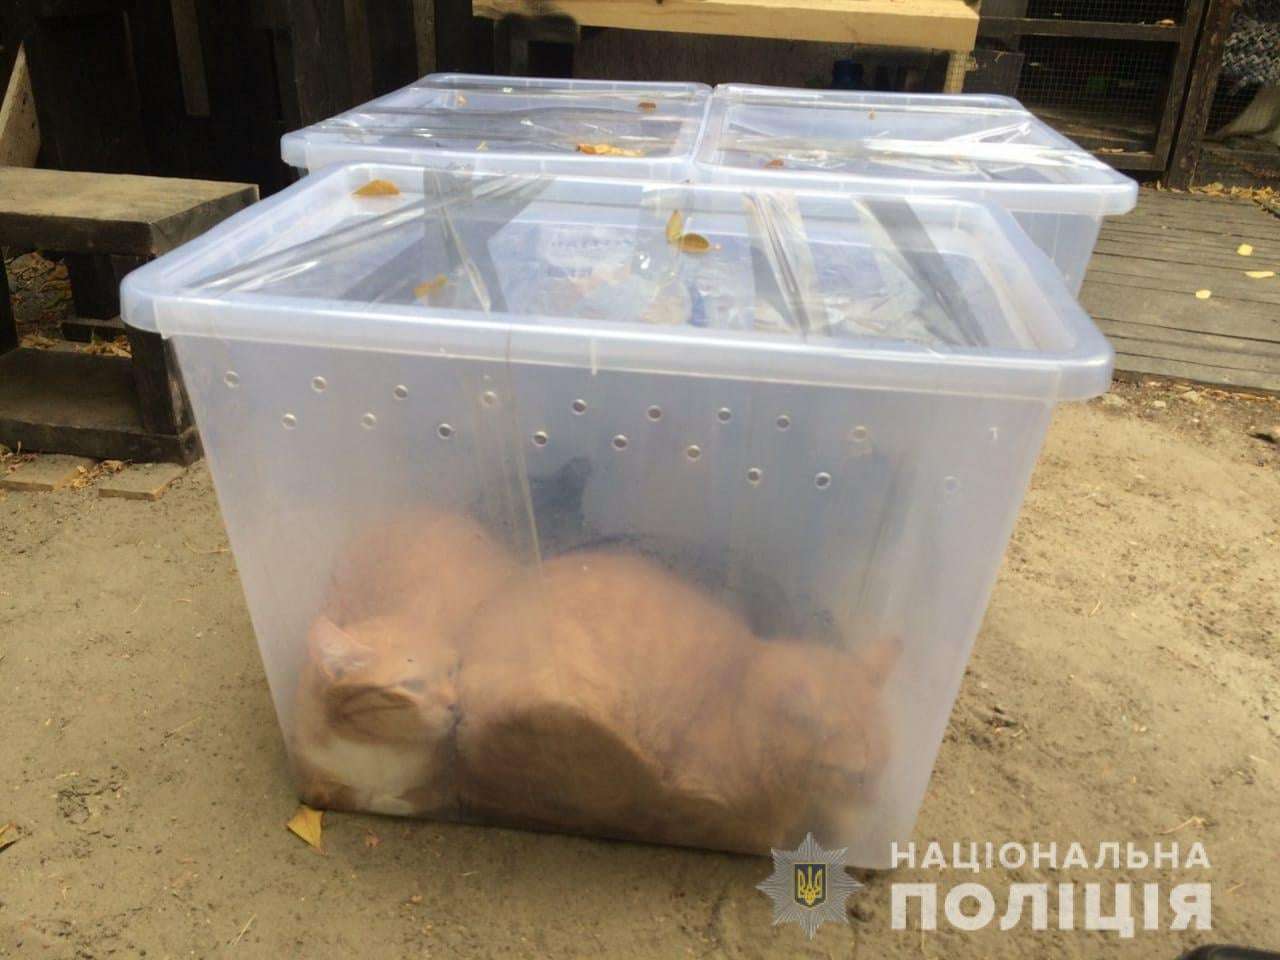 Поліція розшукує нелюдів, які залишили котів у пластикових контейнерах (фото)